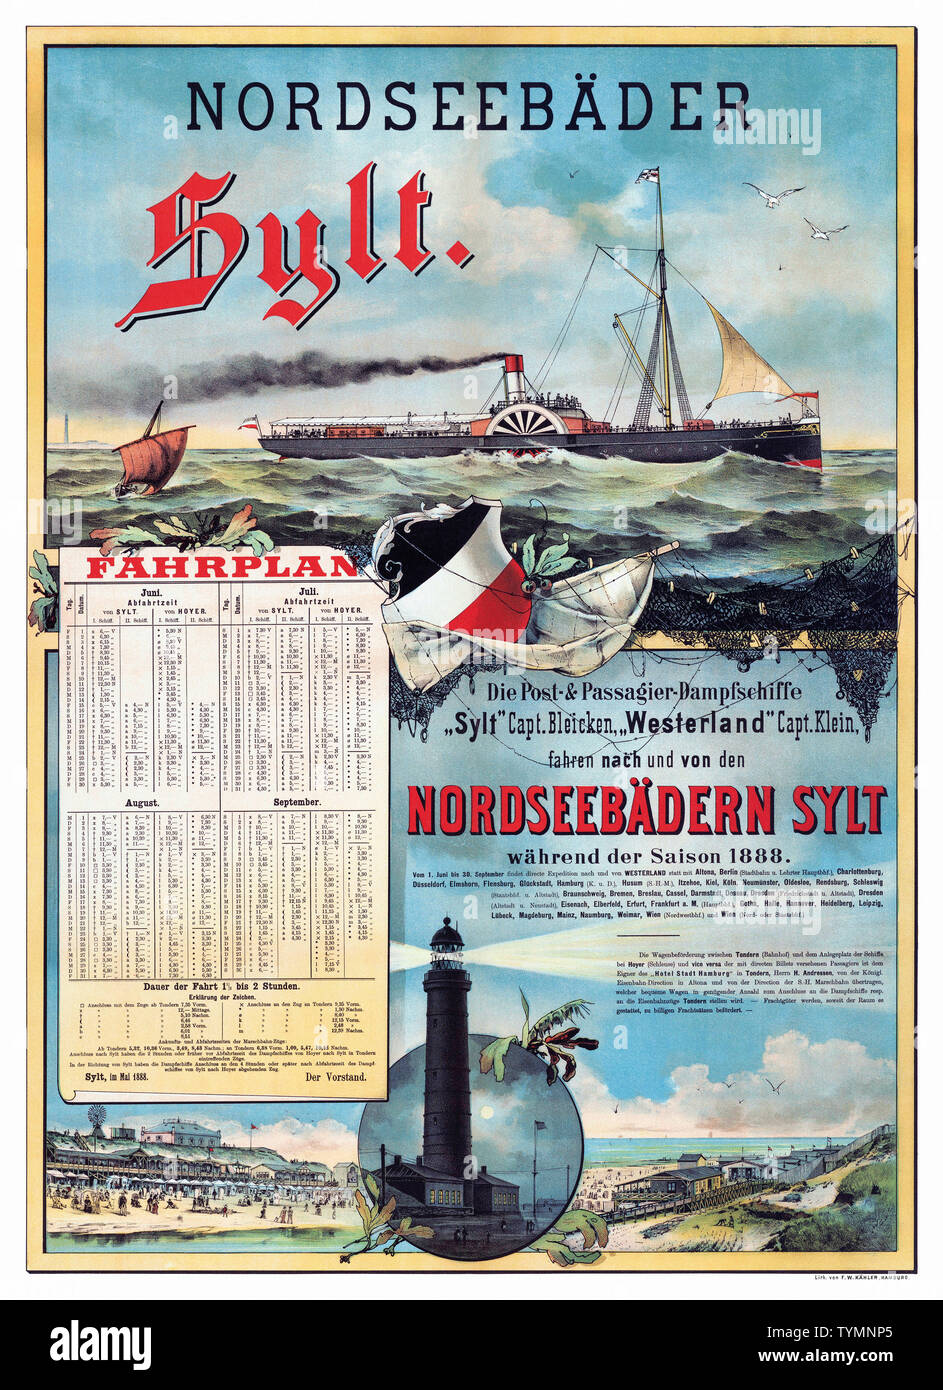 Restored vintage travel poster. Nordseebäder Sylt. Germany. Artist unknown. Published 1888. Stock Photo